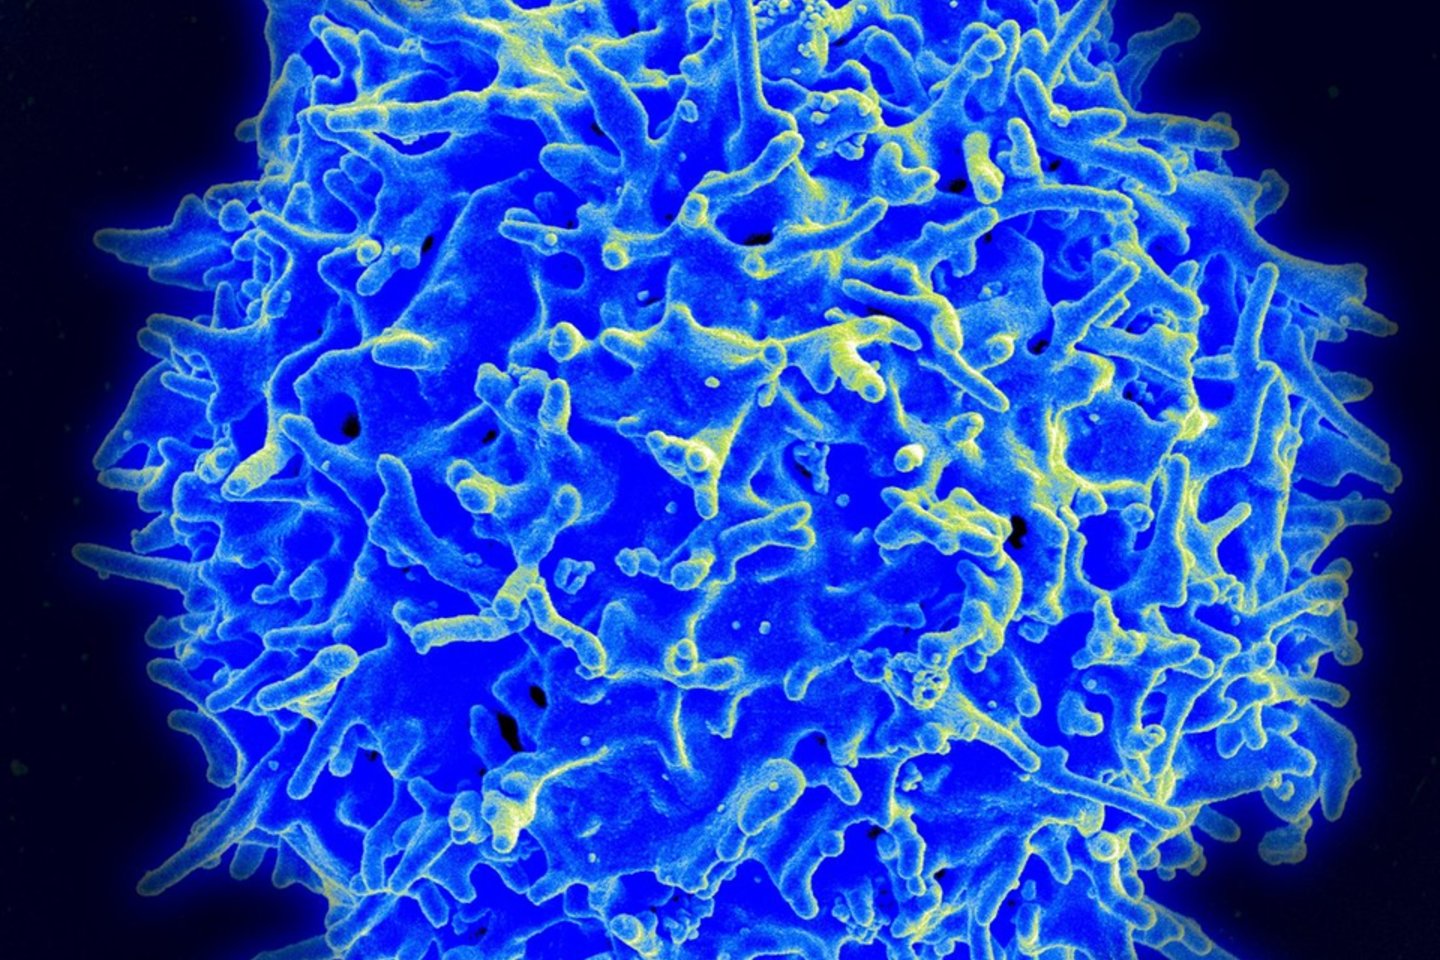  Imuninės sistemos ląstelės – ypač „T“ ląstelės – visada yra aptinkamos arterijų sieneles dengiančiose riebalinėse apnašose<br> Wikimedia commons